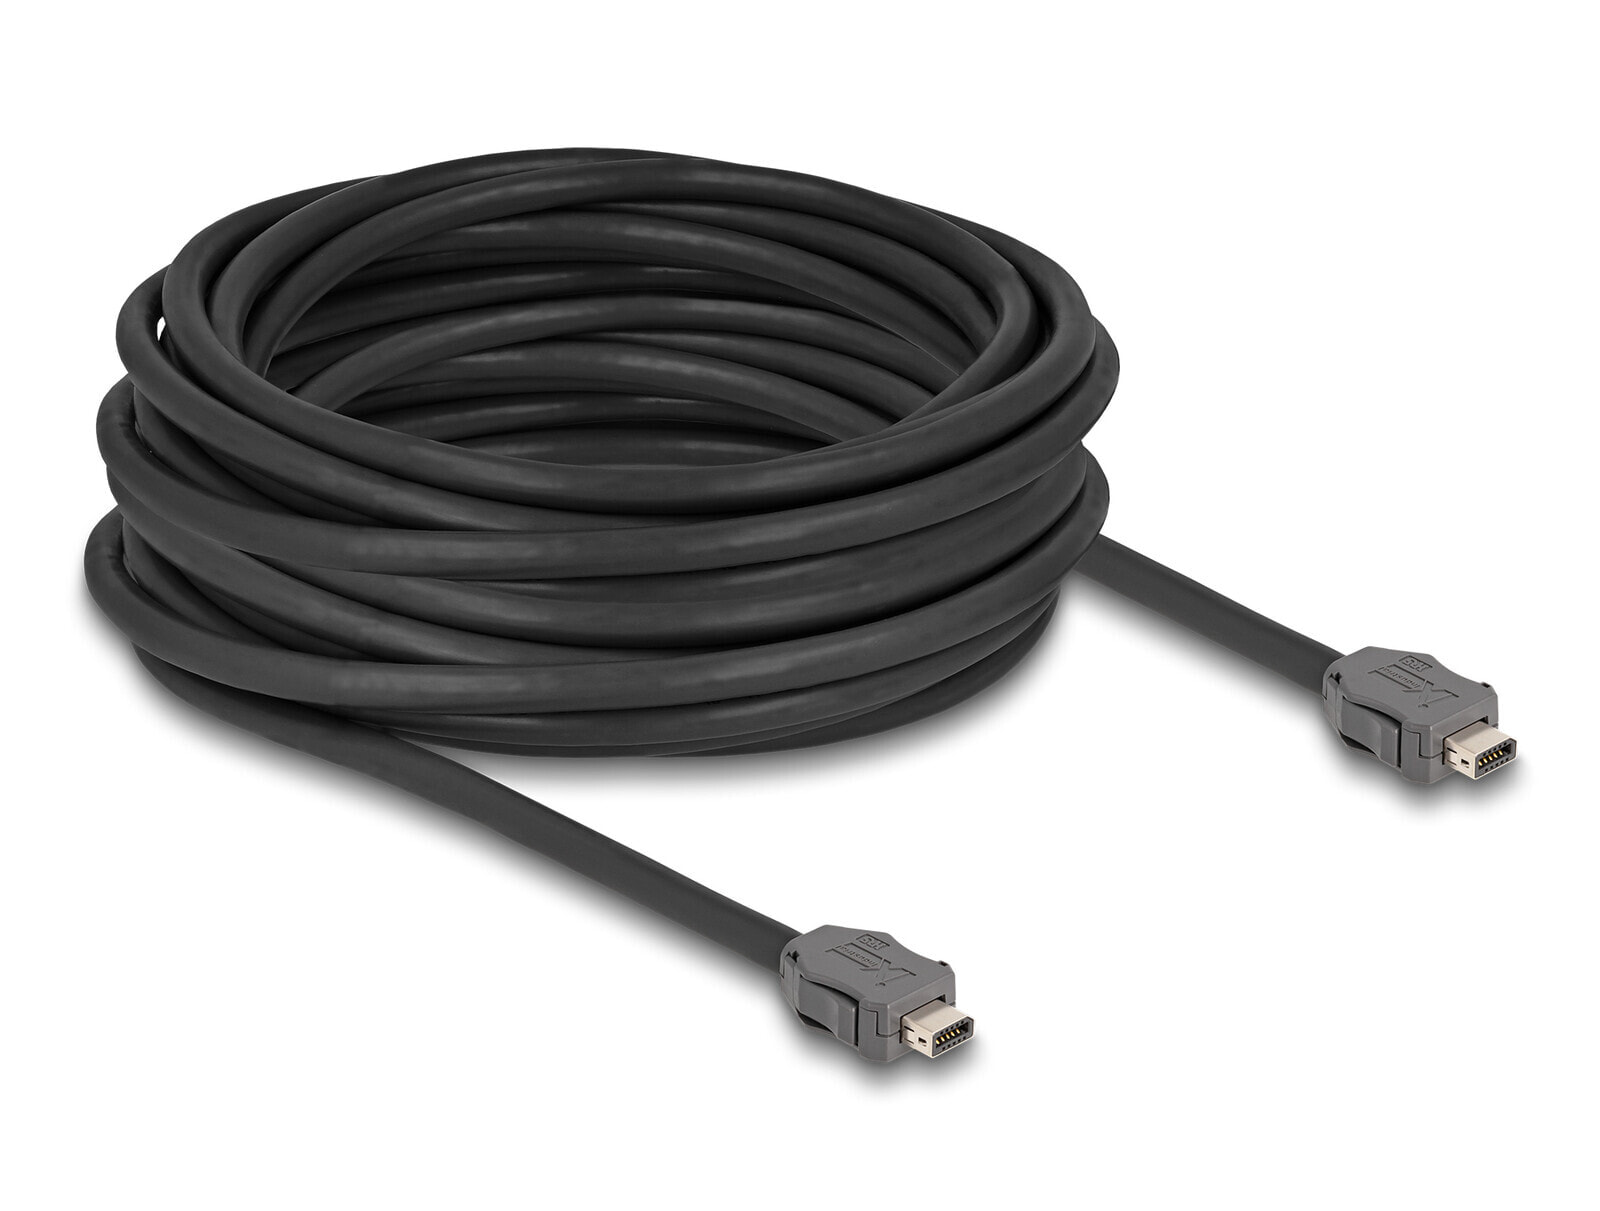 Kabel ix Industrial A-Kodierung Stecker zu Cat.7 10 m - Cable - Network